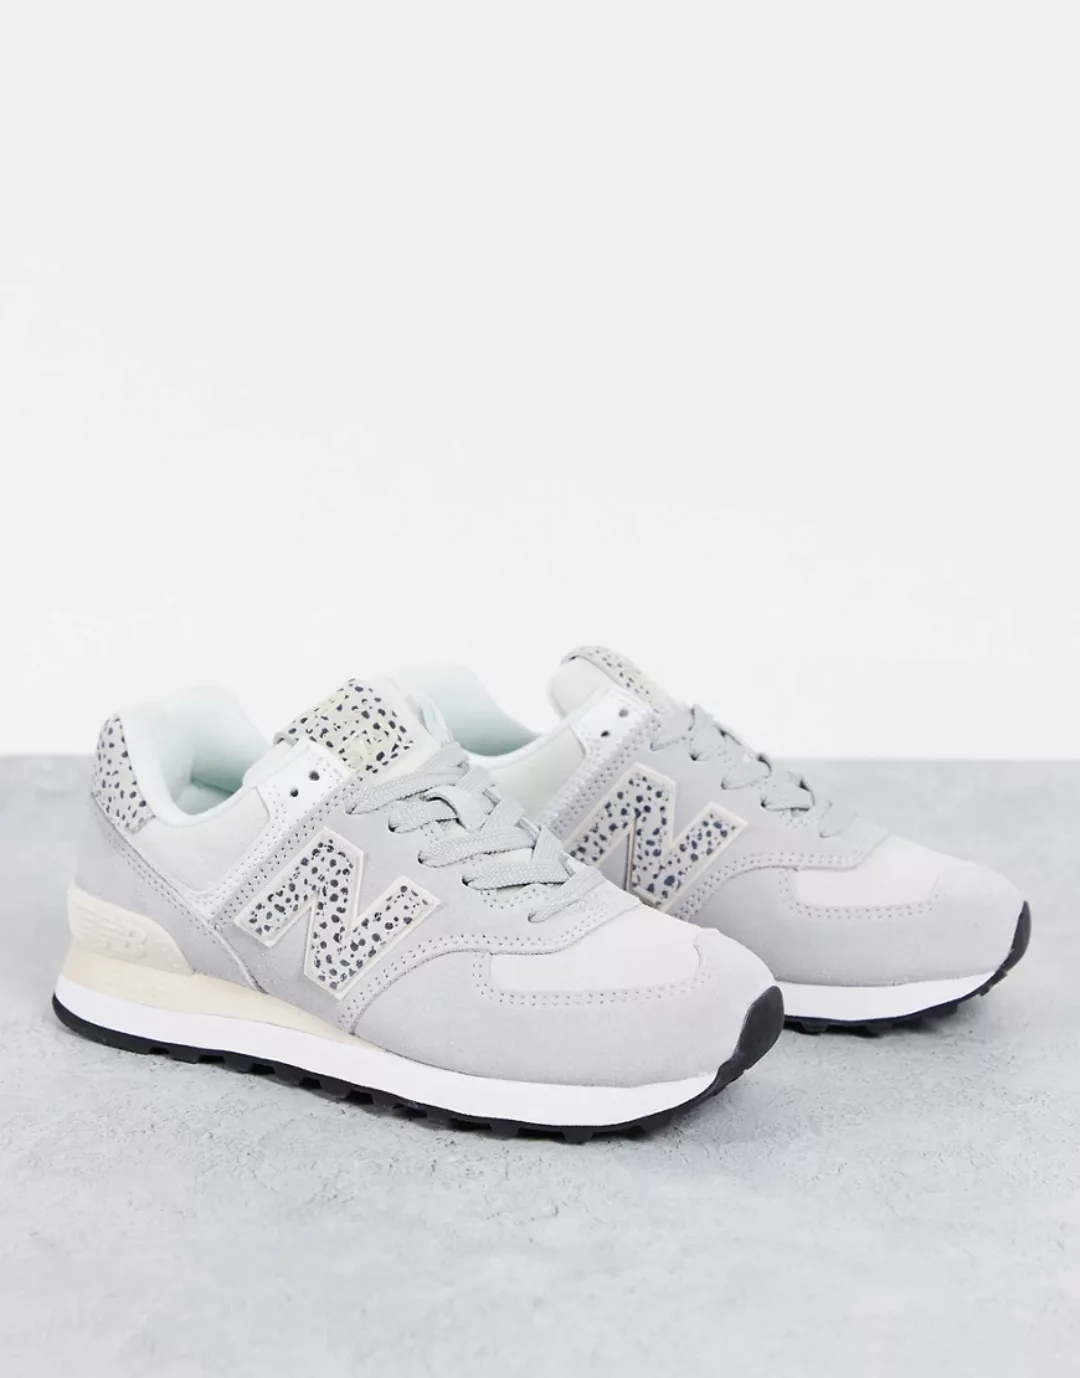 New Balance – 574 – Sneaker in Weiß mit Leopardenmuster, exklusiv bei ASOS günstig online kaufen